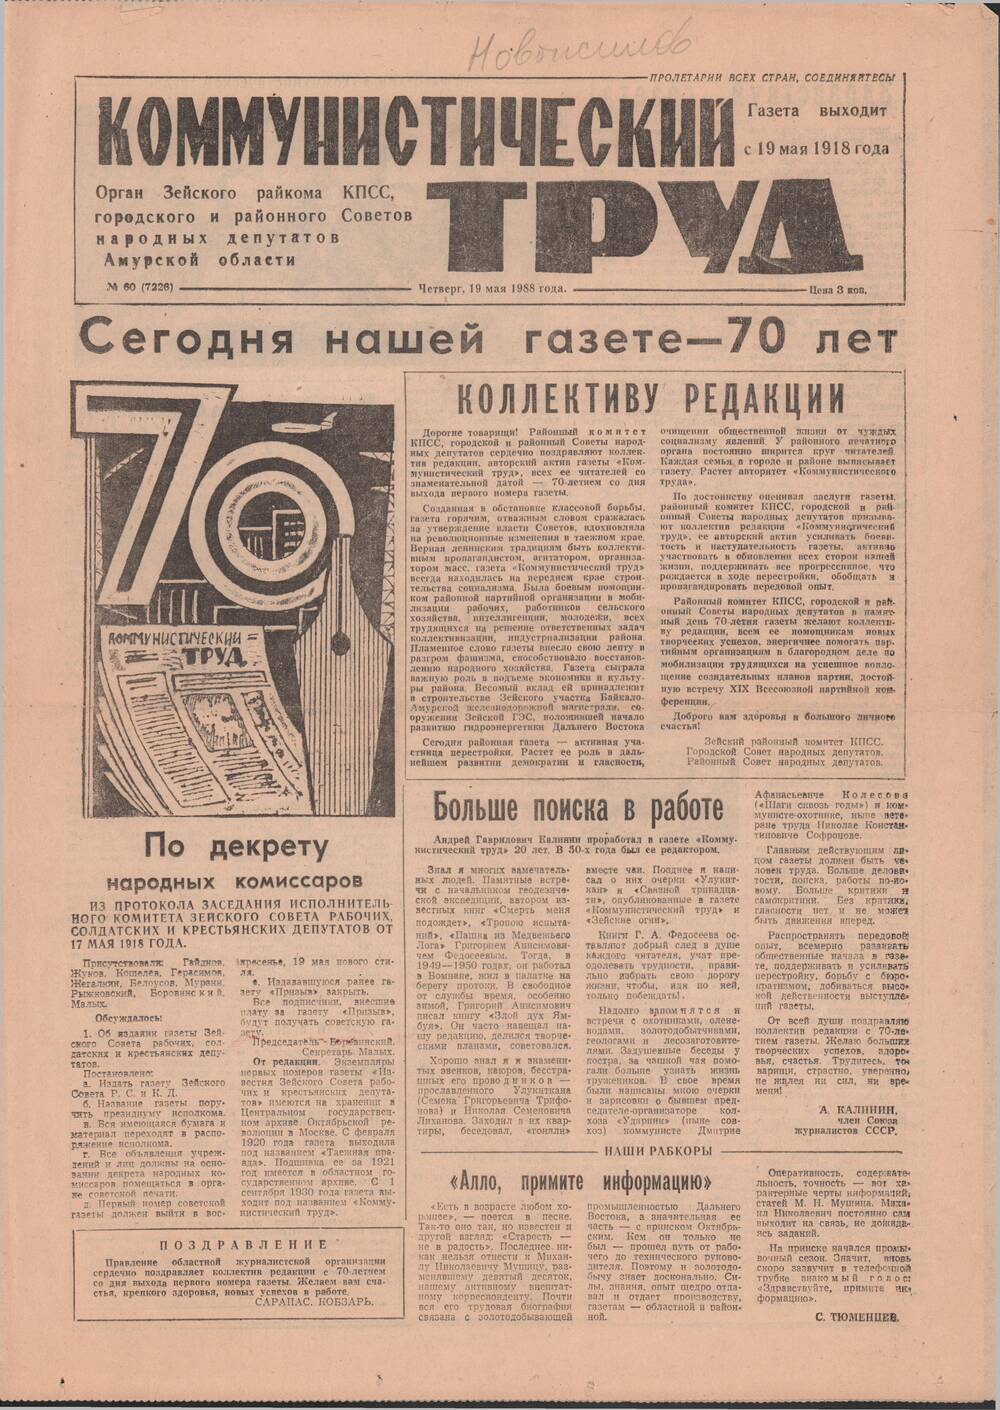 Газета Коммунистический труд № 60 от 19 мая 1988 года, посвященная 70-летию газеты.